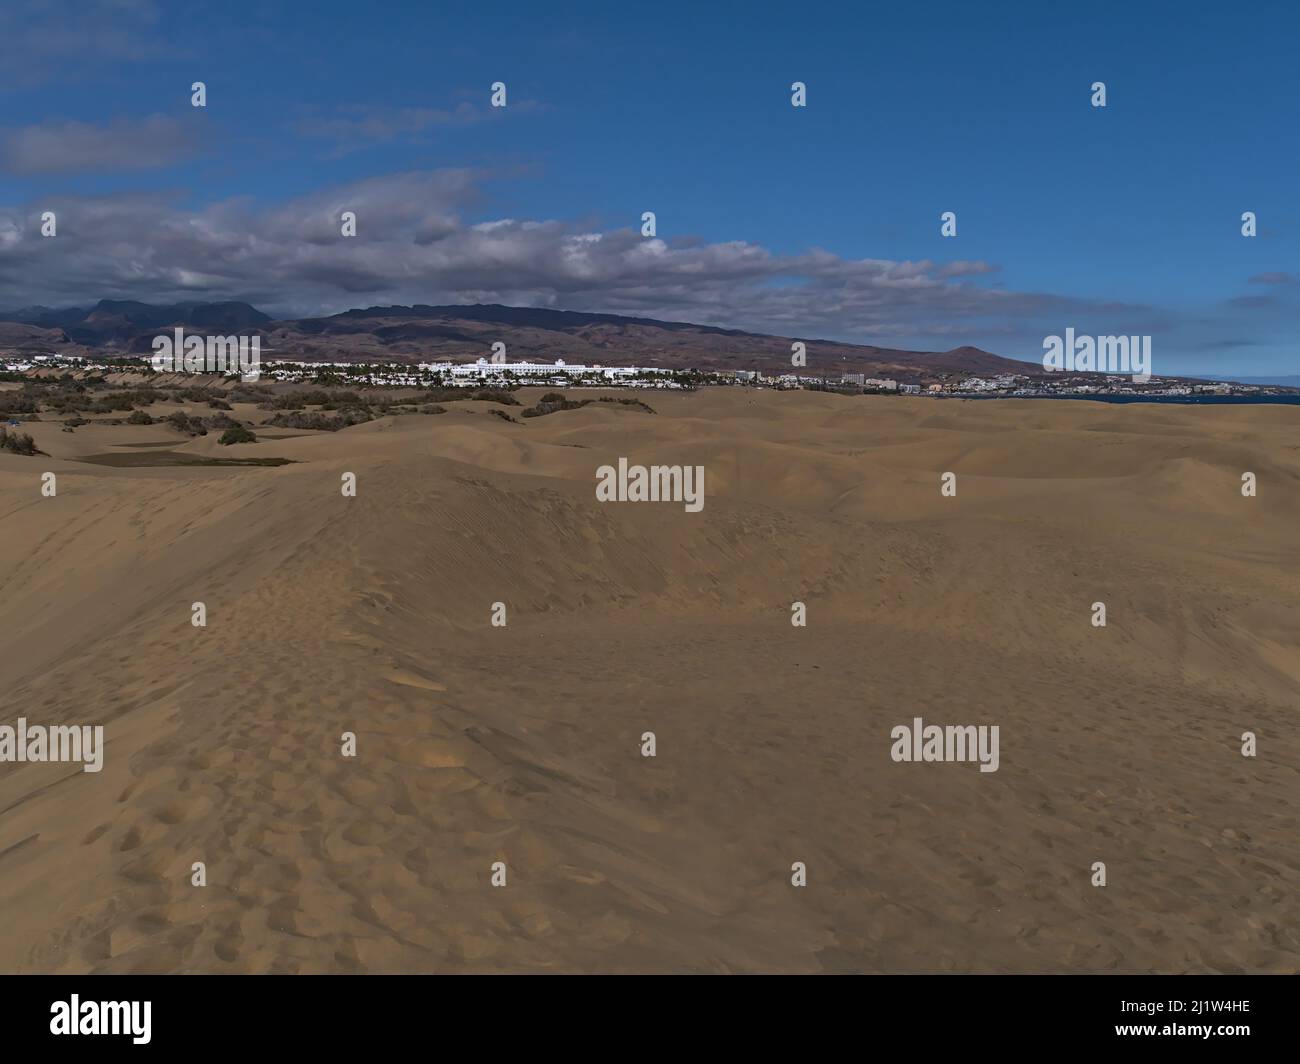 Blick auf das beliebte Naturschutzgebiet Dunas de Maspalomas im Süden der Insel Gran Canaria, Kanarische Inseln, Spanien an der Atlantikküste mit Sanddünen. Stockfoto